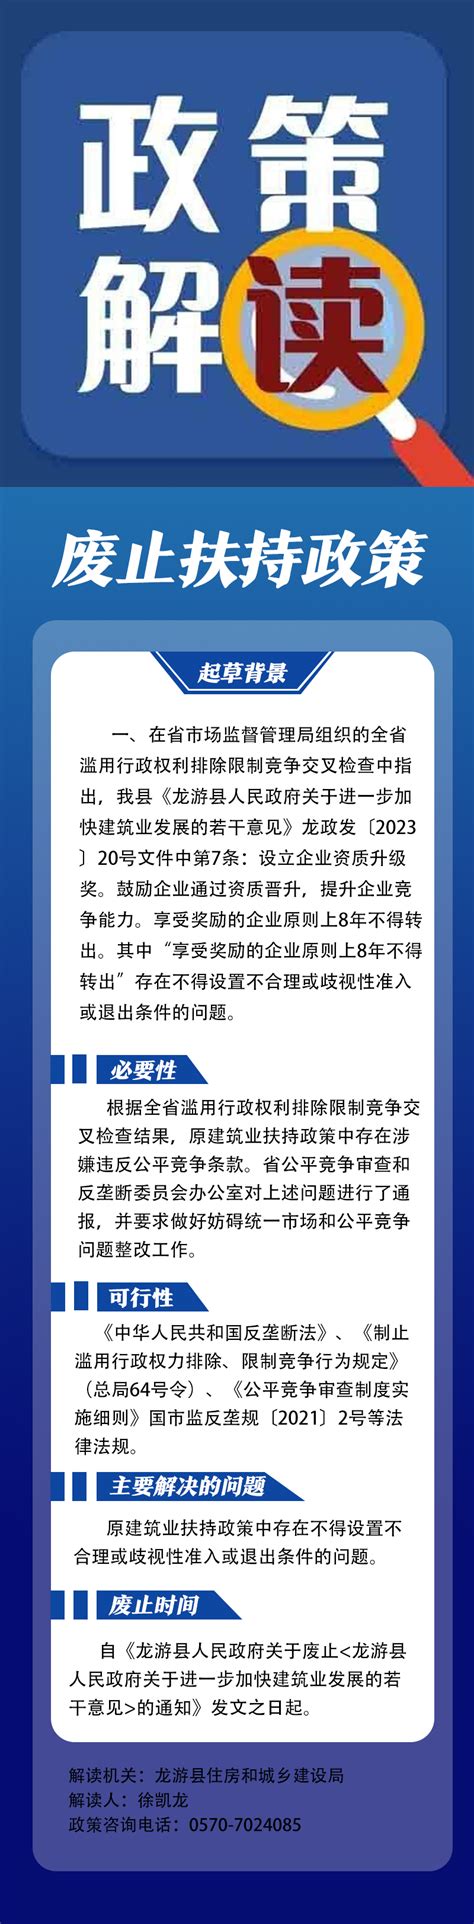 【图解】龙游县人民政府关于废止《龙游县人民政府关于进一步加快建筑业发展的若干意见》的通知